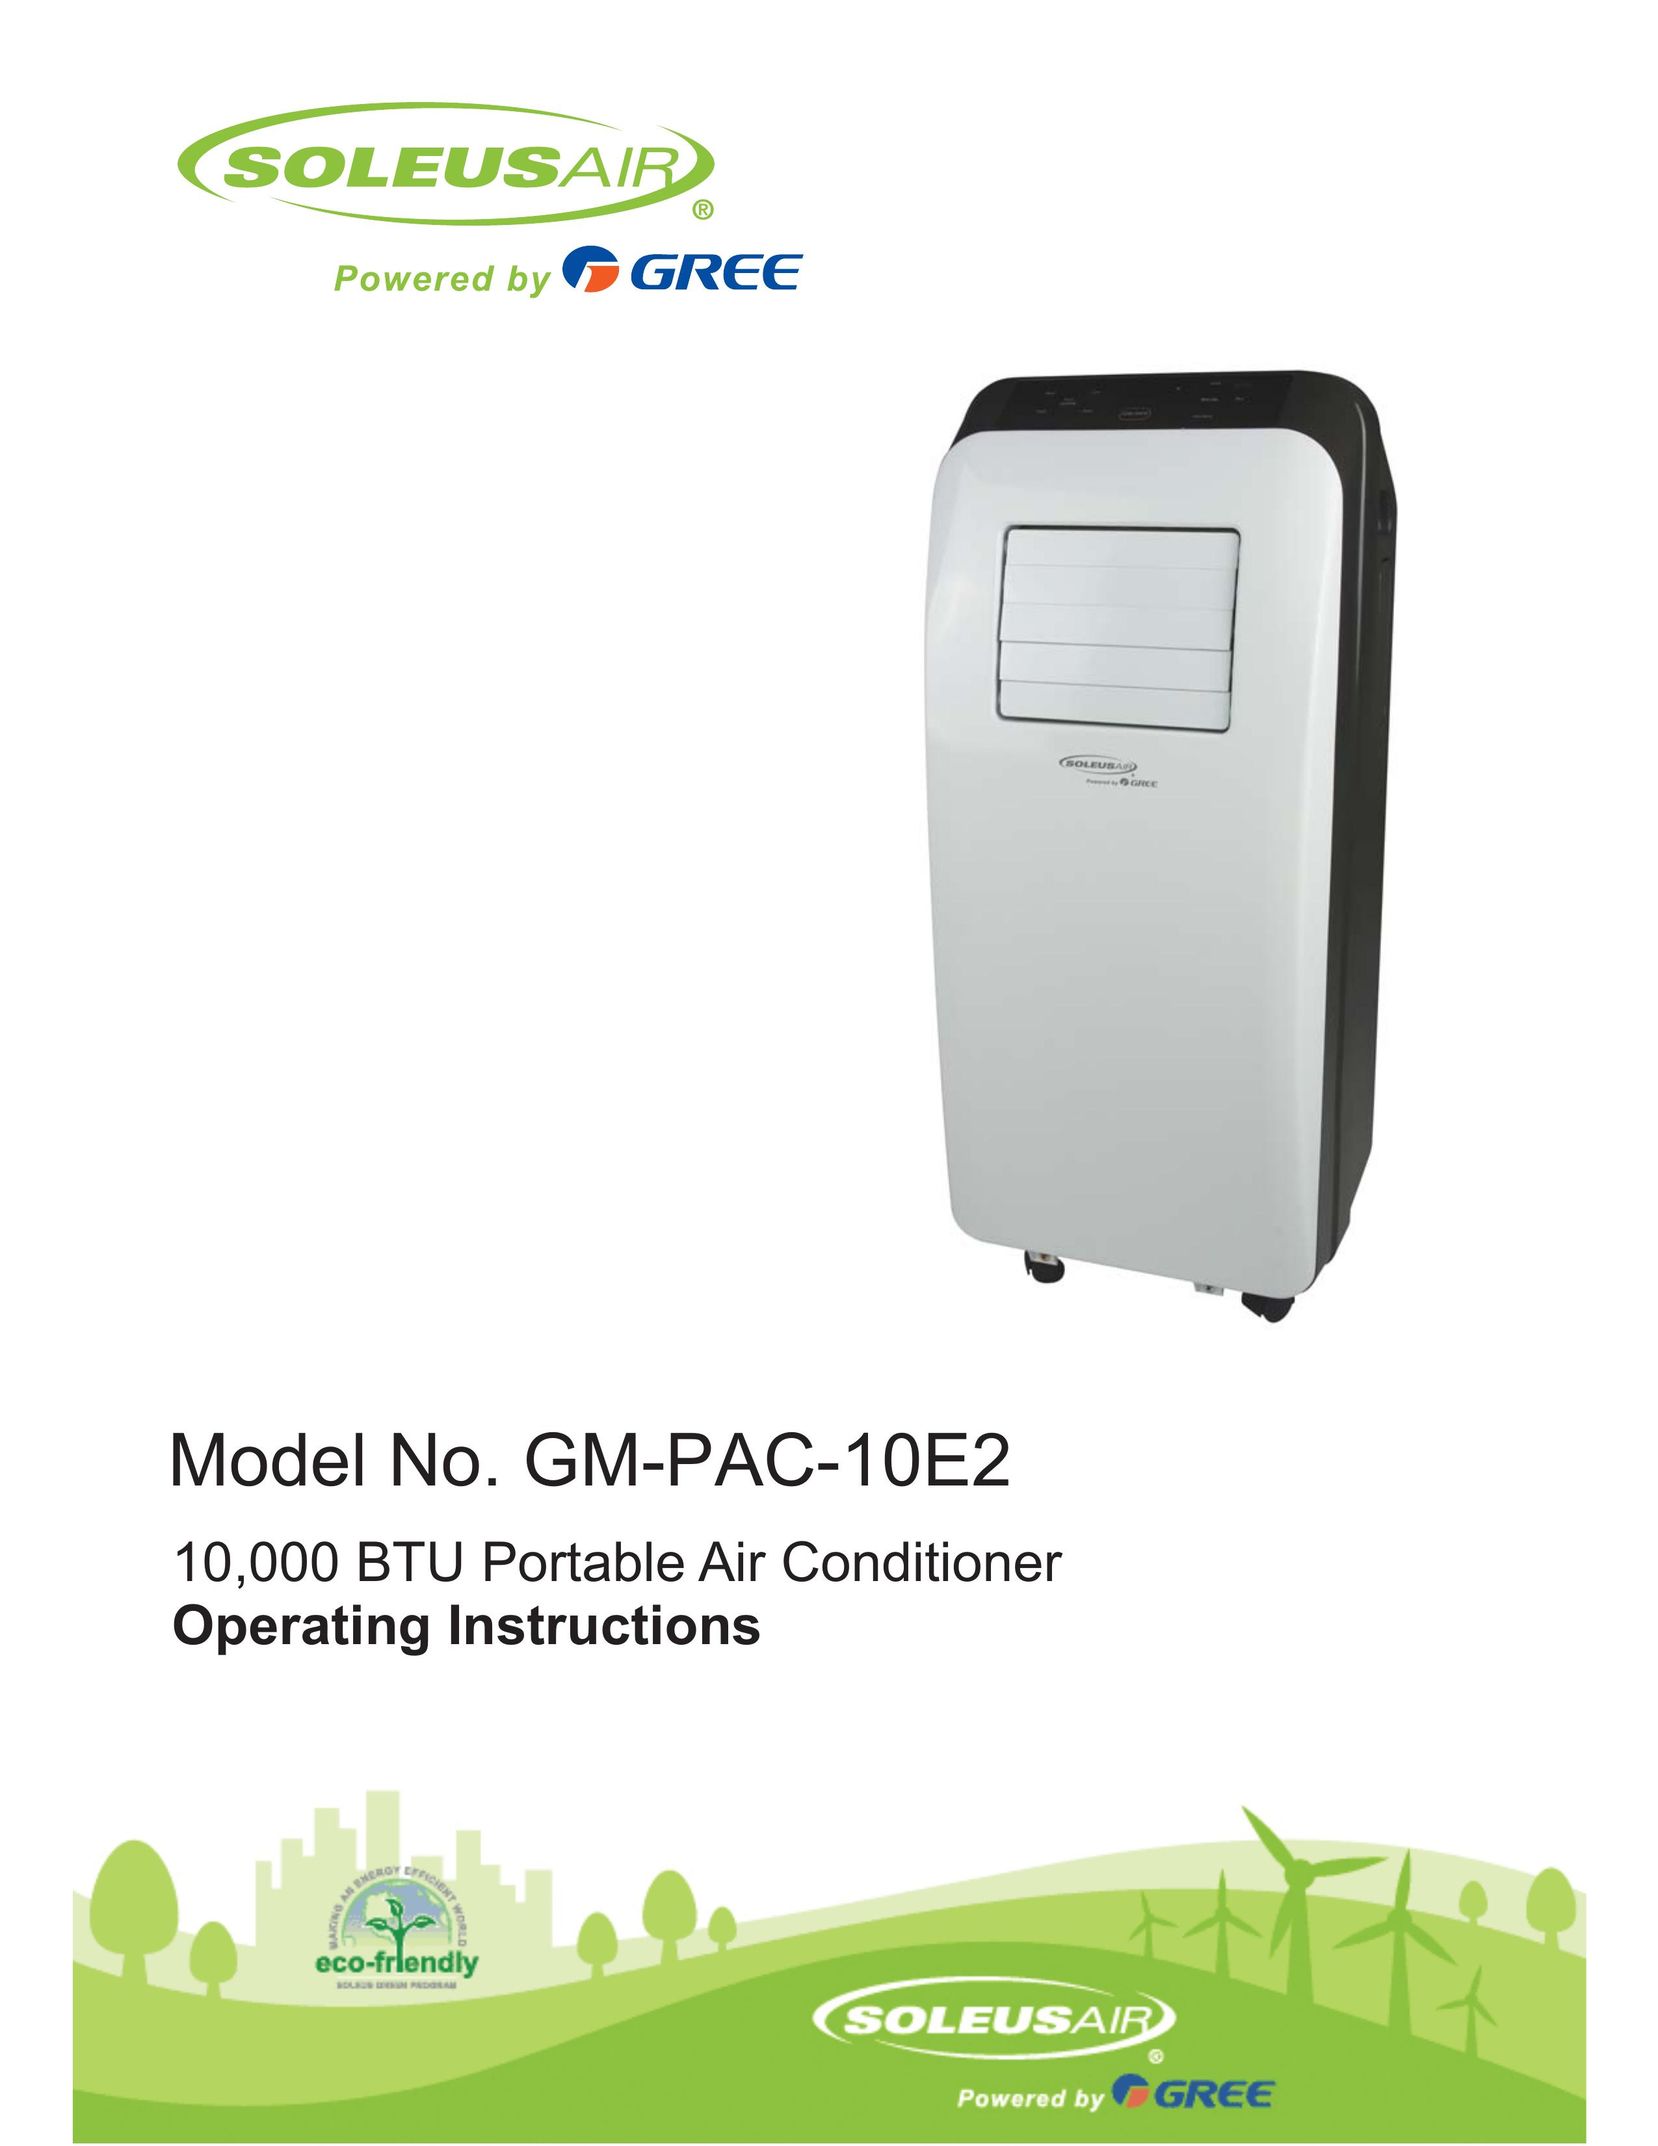 Soleus Air GM-PAC-10E2 Air Conditioner User Manual